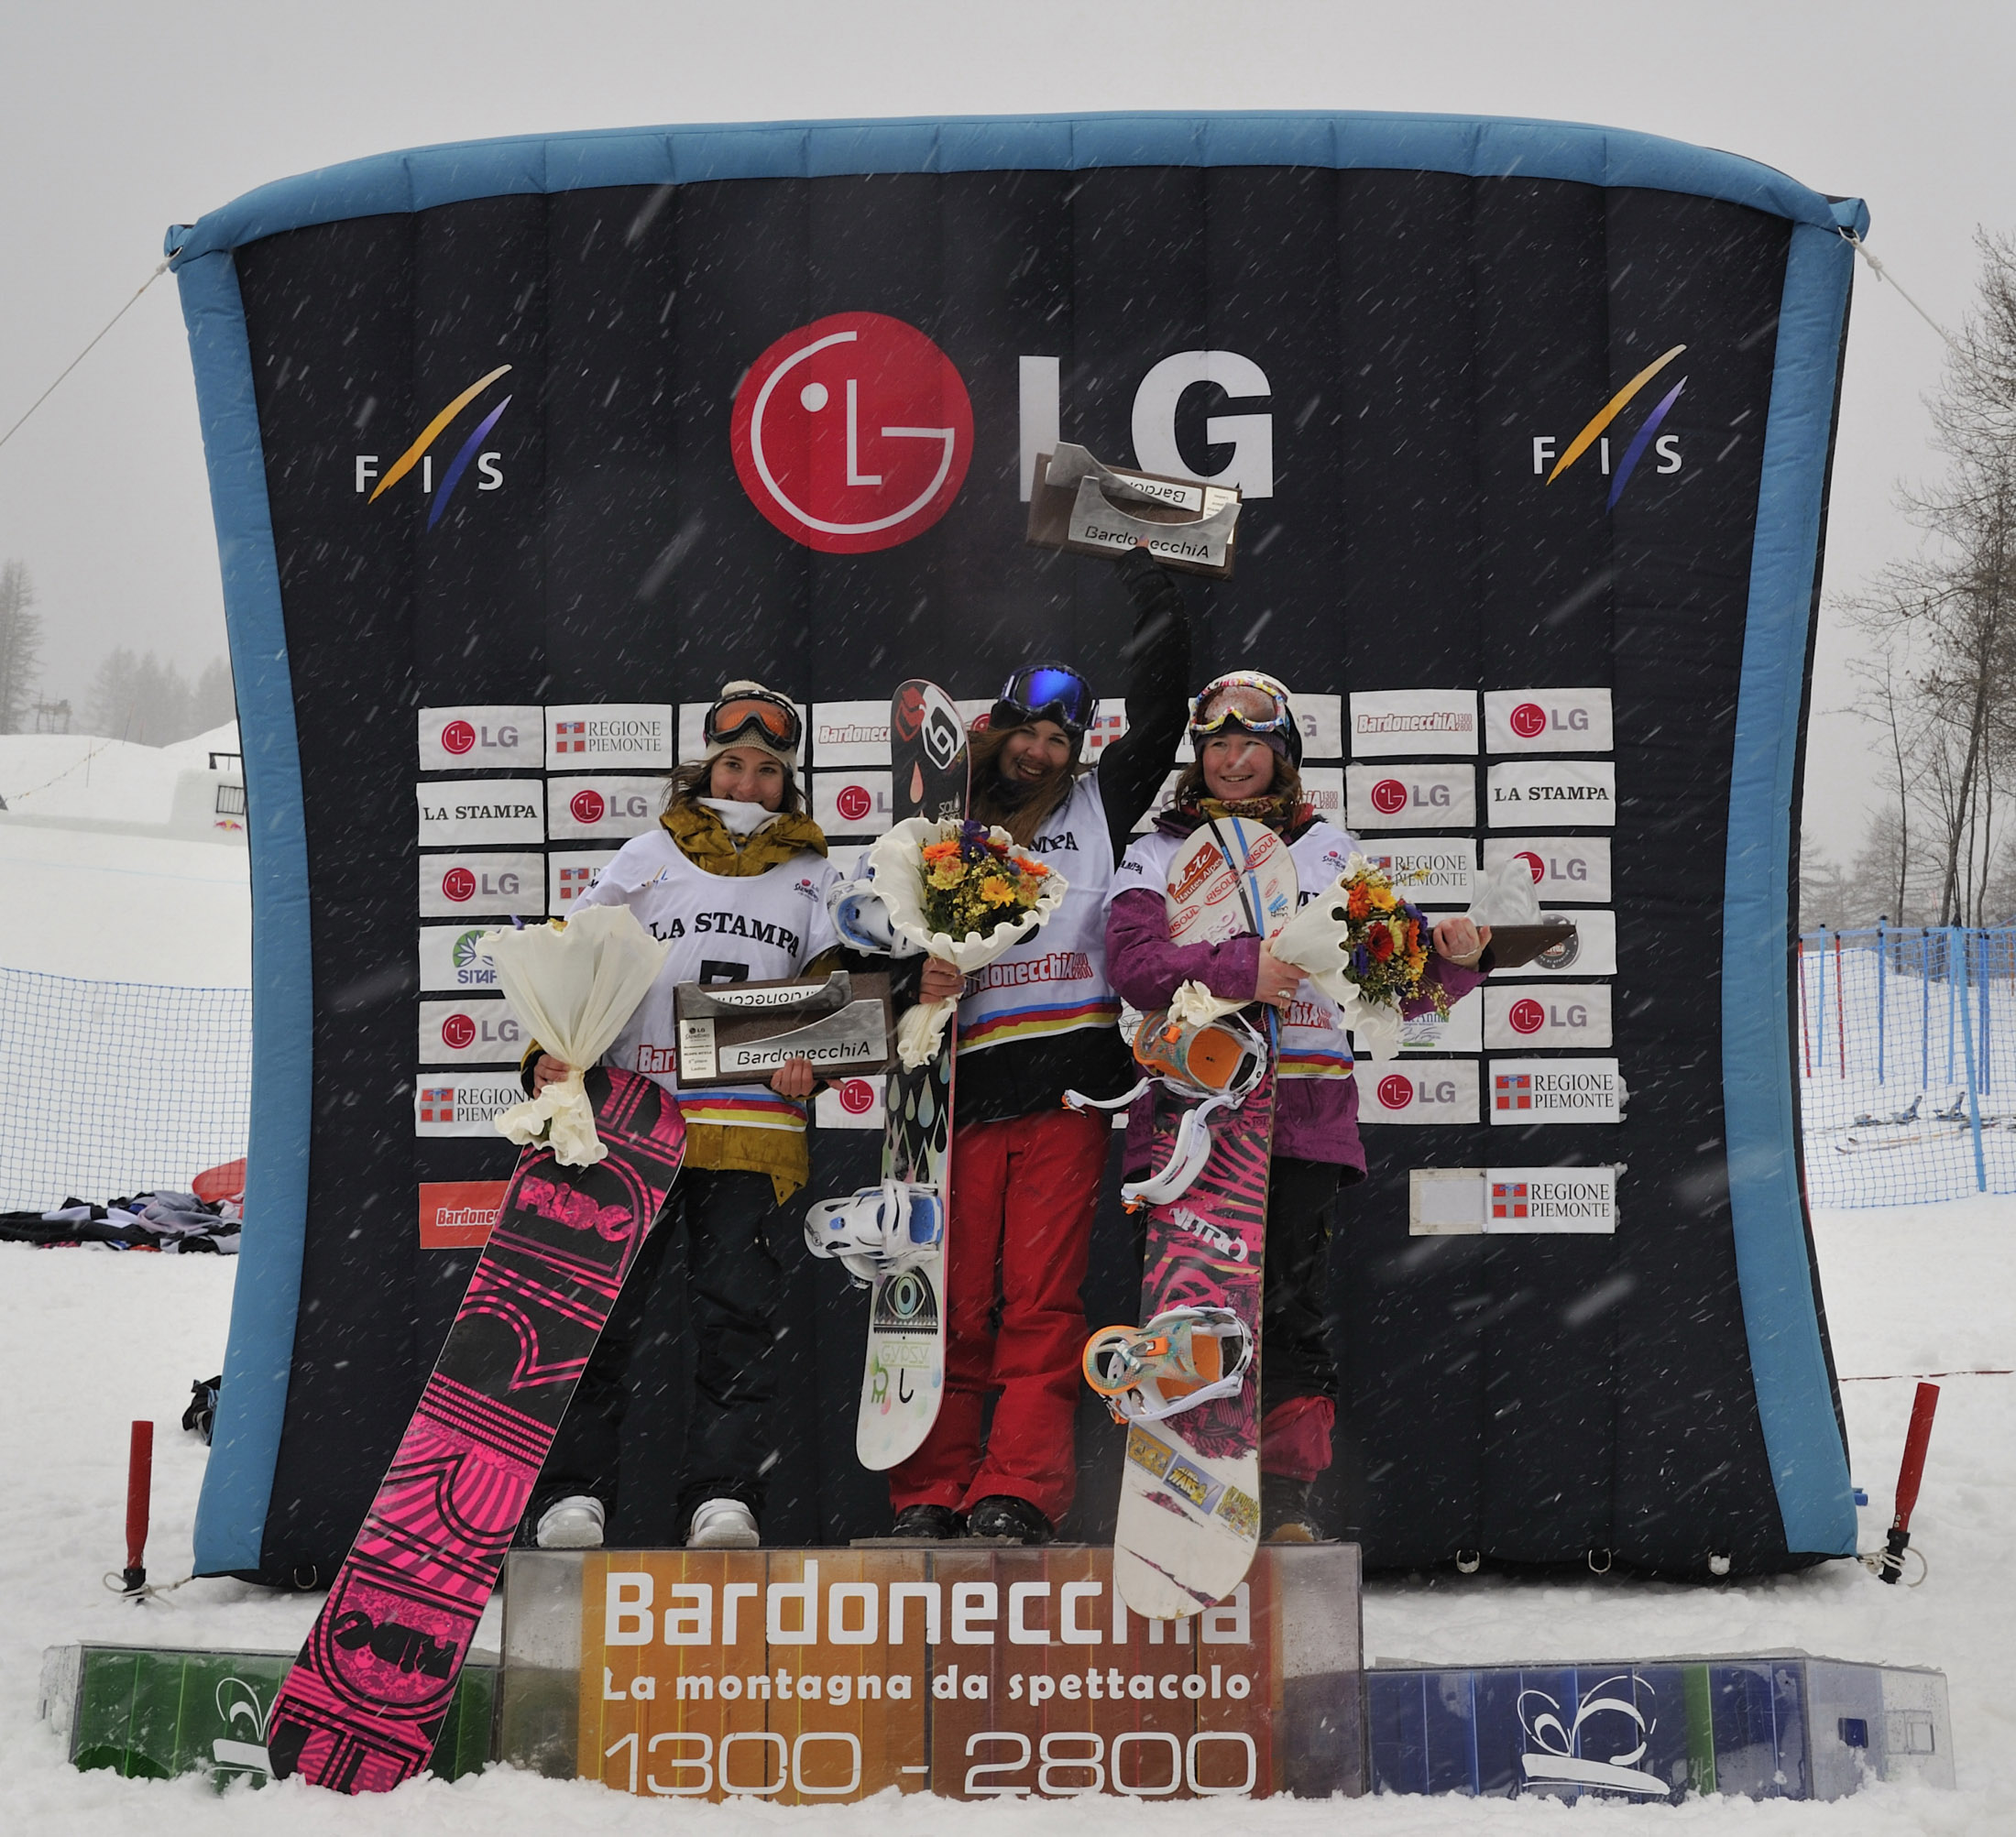 La prova di Slope Style chiude la tappa della LG Snowboard FIS World Cup di Bardonecchia